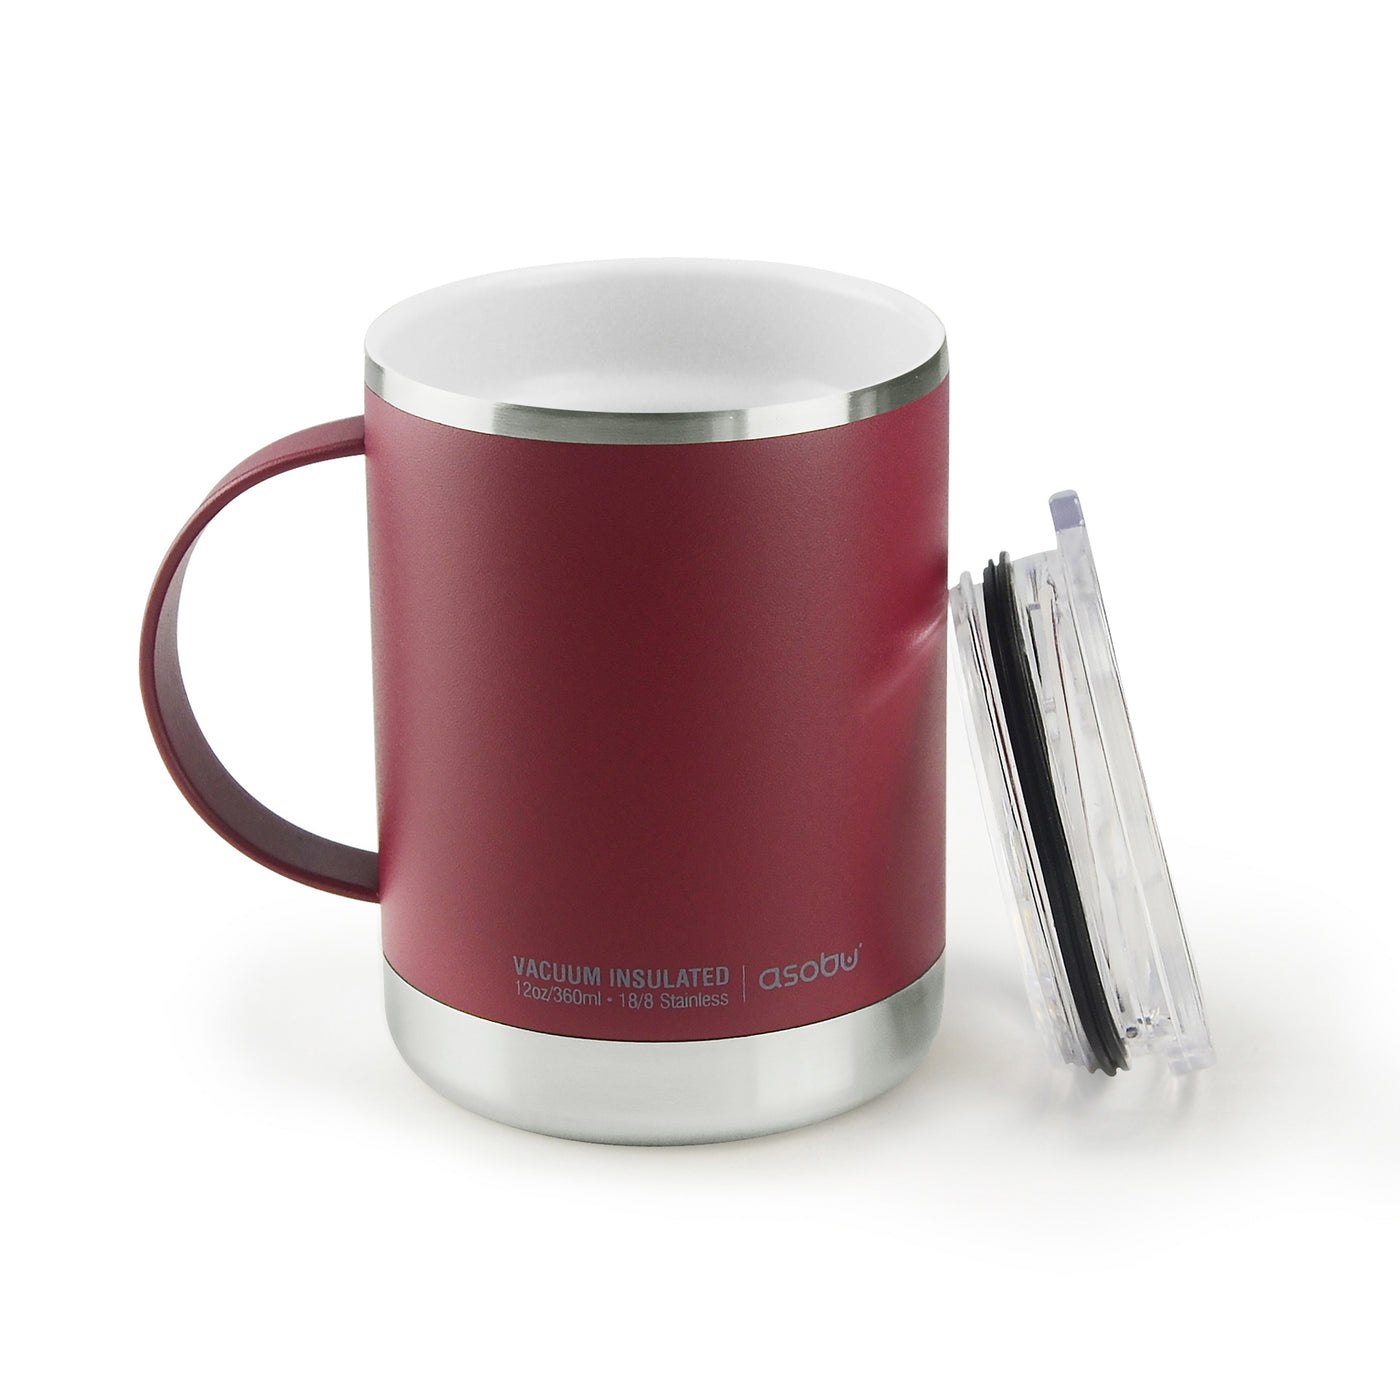 Red Copper Mug - Ceramic-Lined topple-Proof Travel Mug for Better